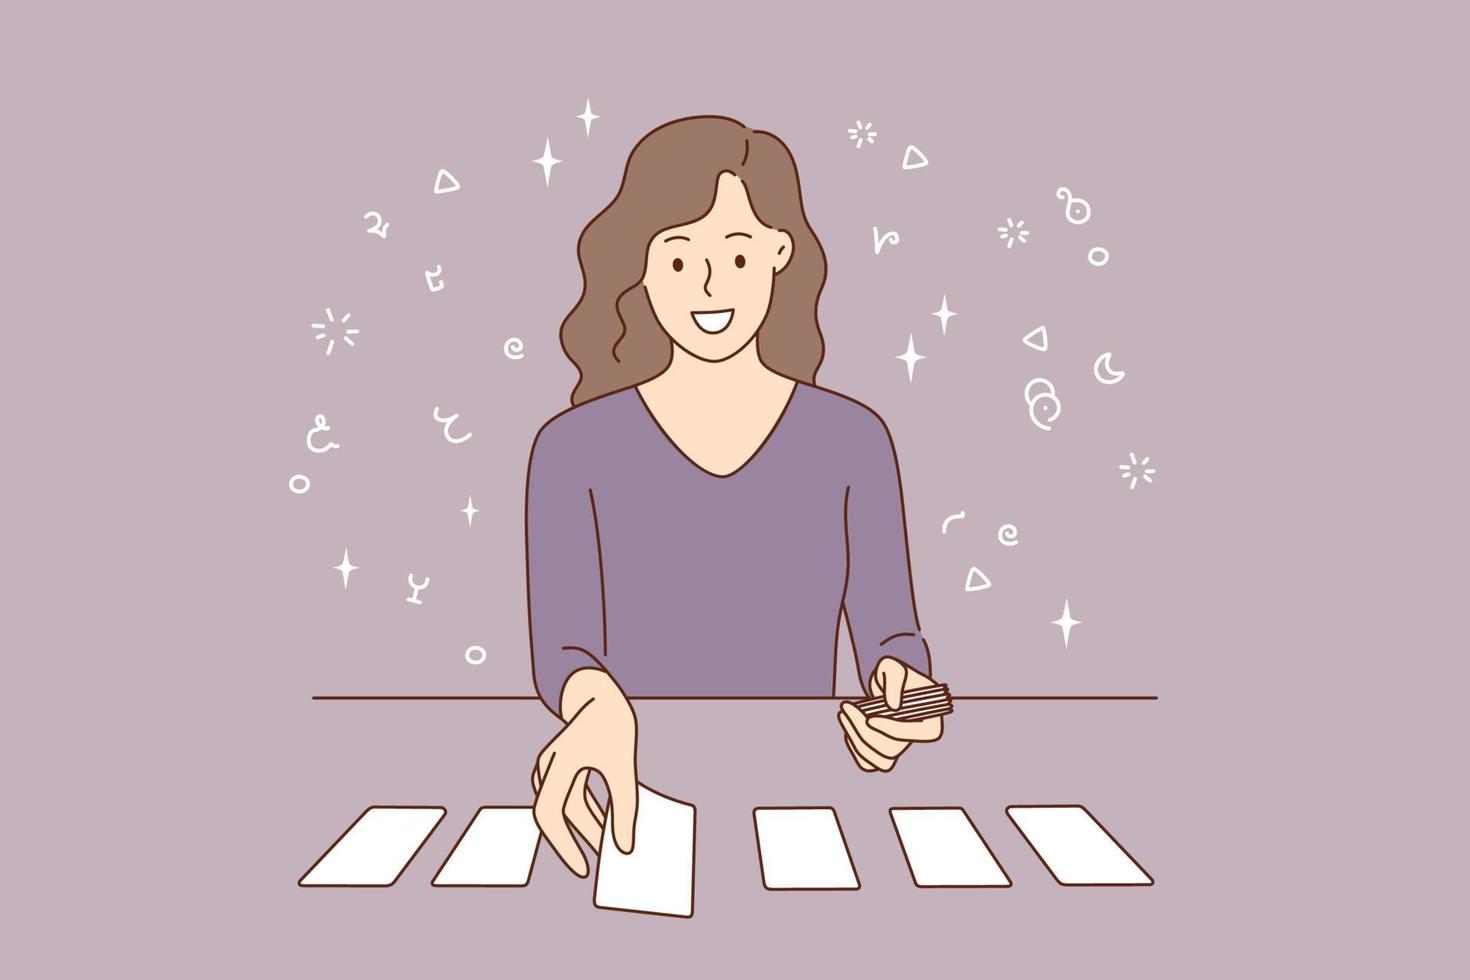 naipes y concepto de pronóstico individual. hermoso personaje de dibujos animados de mujer joven sonriente sentado colocando cartas en la mesa sobre ilustración de vector de fondo gris